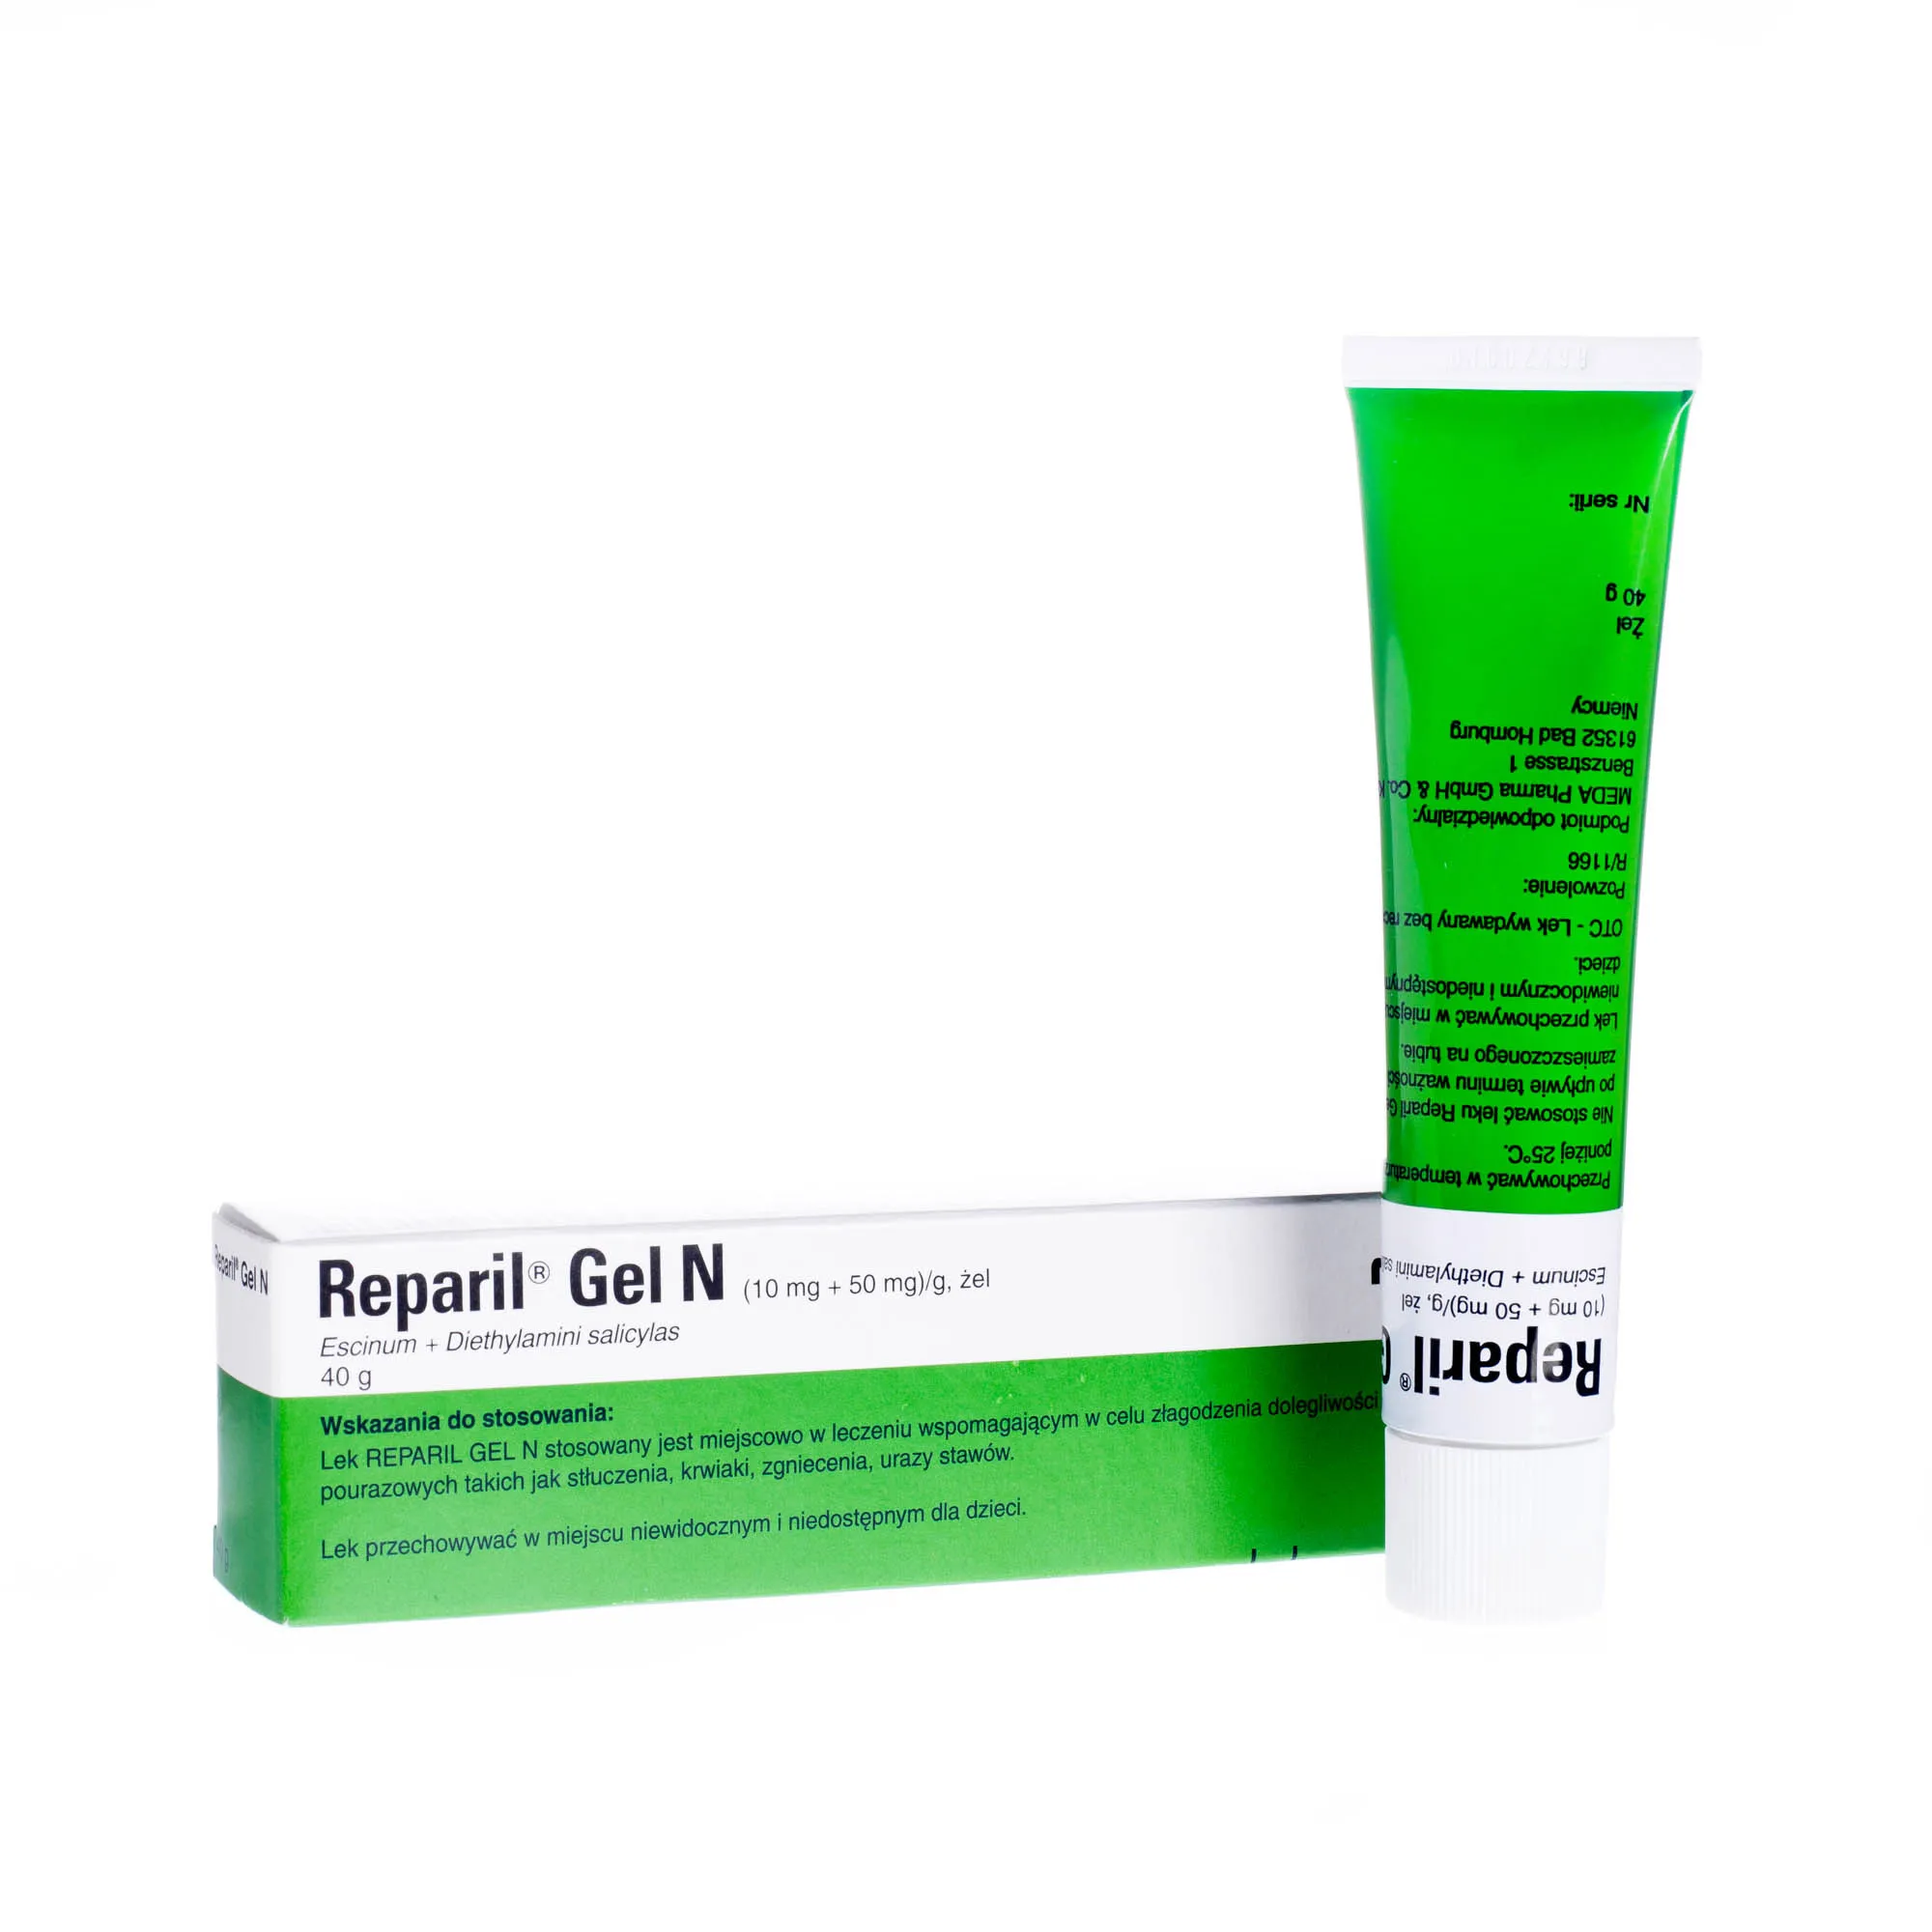 Reparil Gel N, (10 mg + 50 mg )/g, żel, 40 g